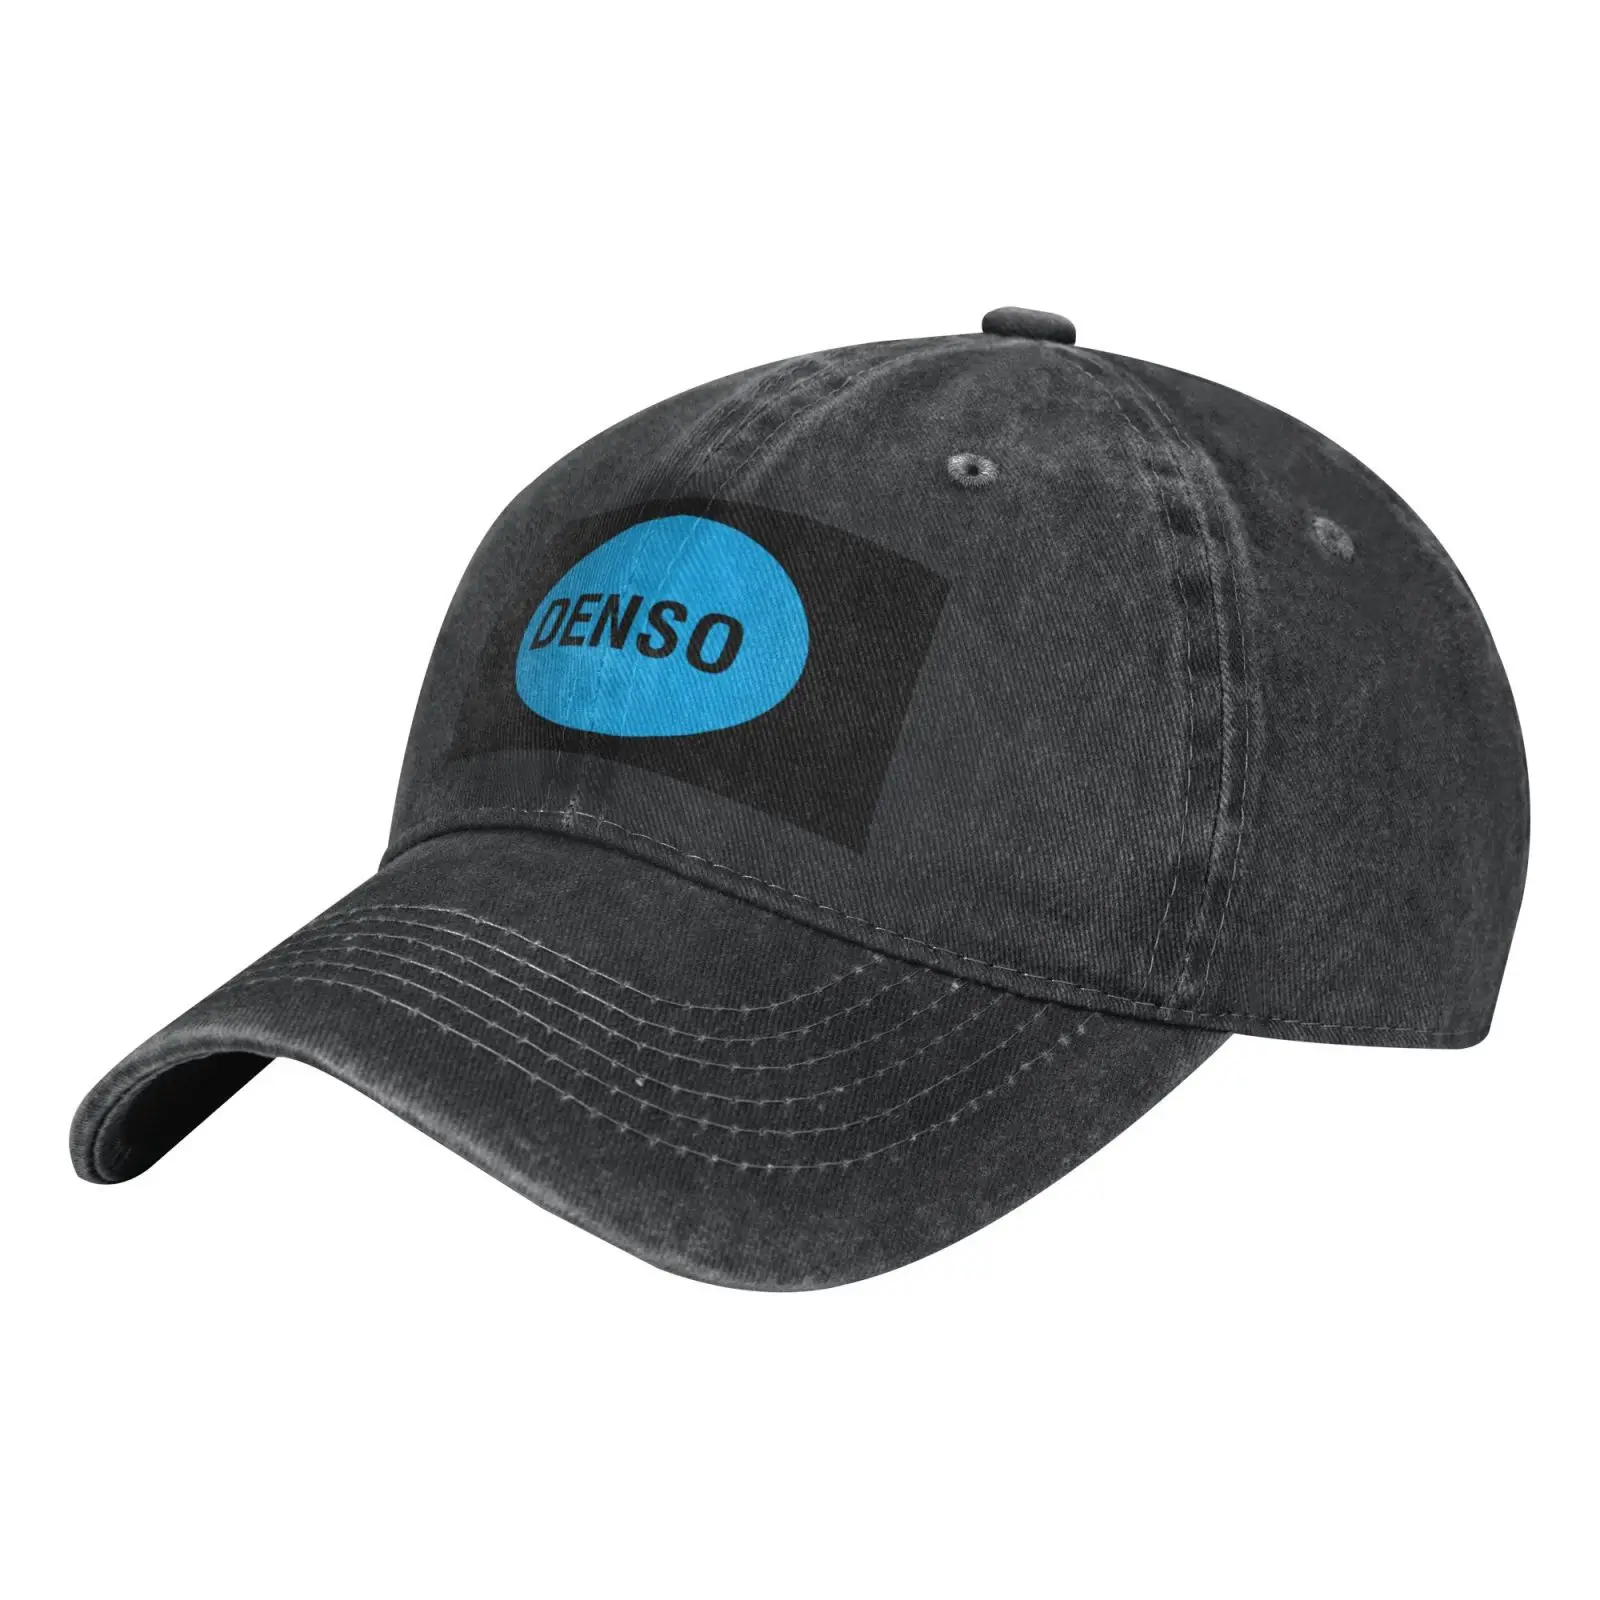 

Кепка Denso 804, берет, мужские шапки, бейсболка, кепка s, женская шапка, кепки женские, мужские, женские, мужские кепки 2021, модные шапки для мужчин